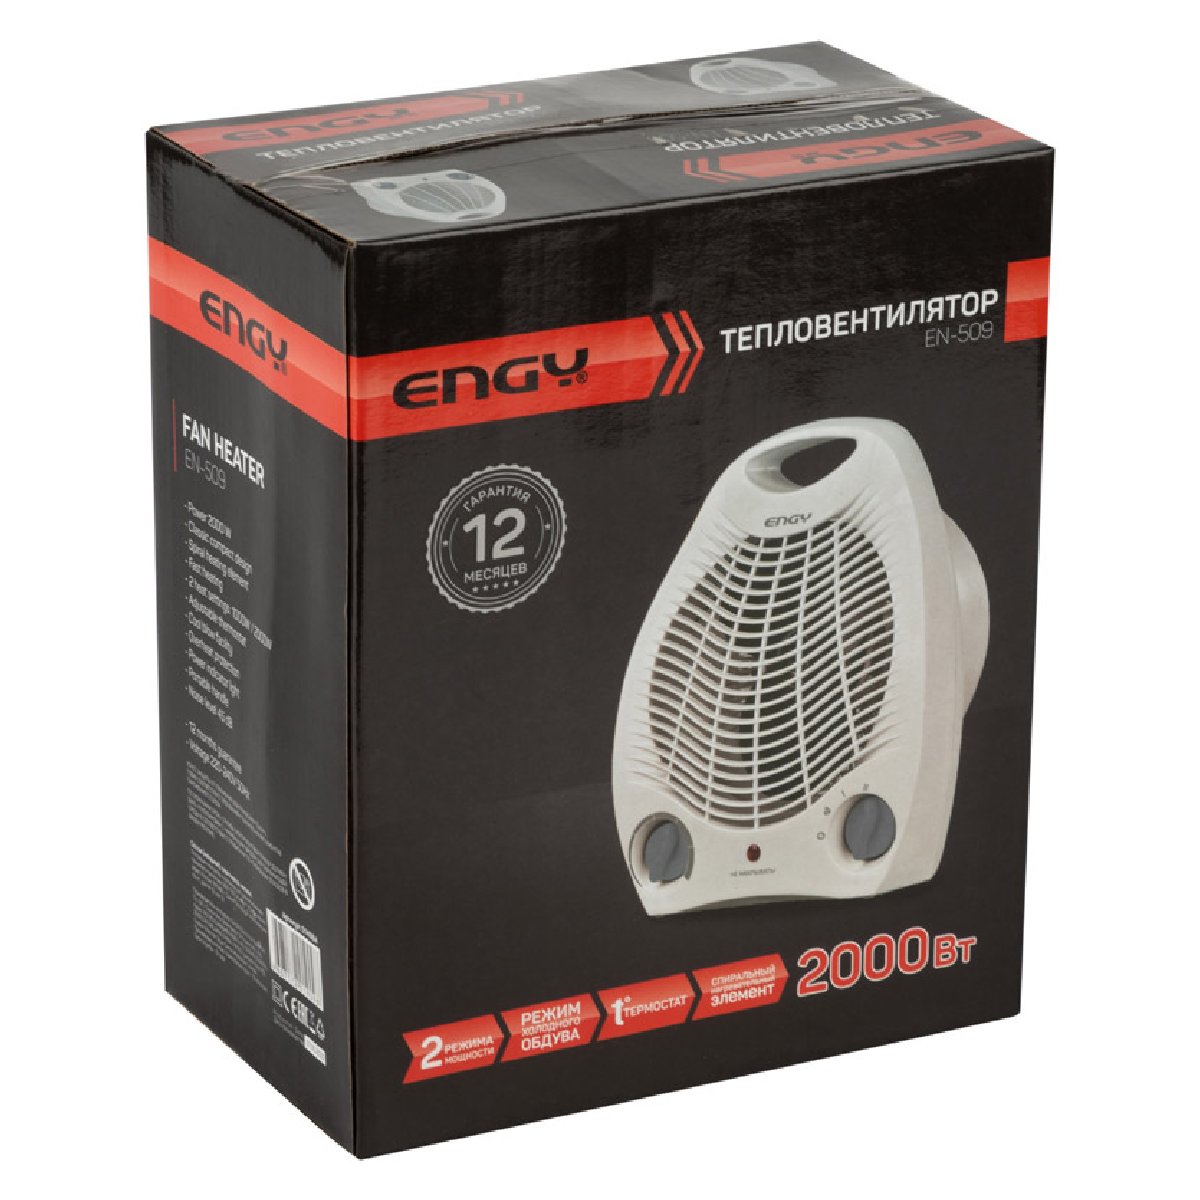 Тепловентилятор Engy EN-509 на 2.0 кВт, белый (014984)